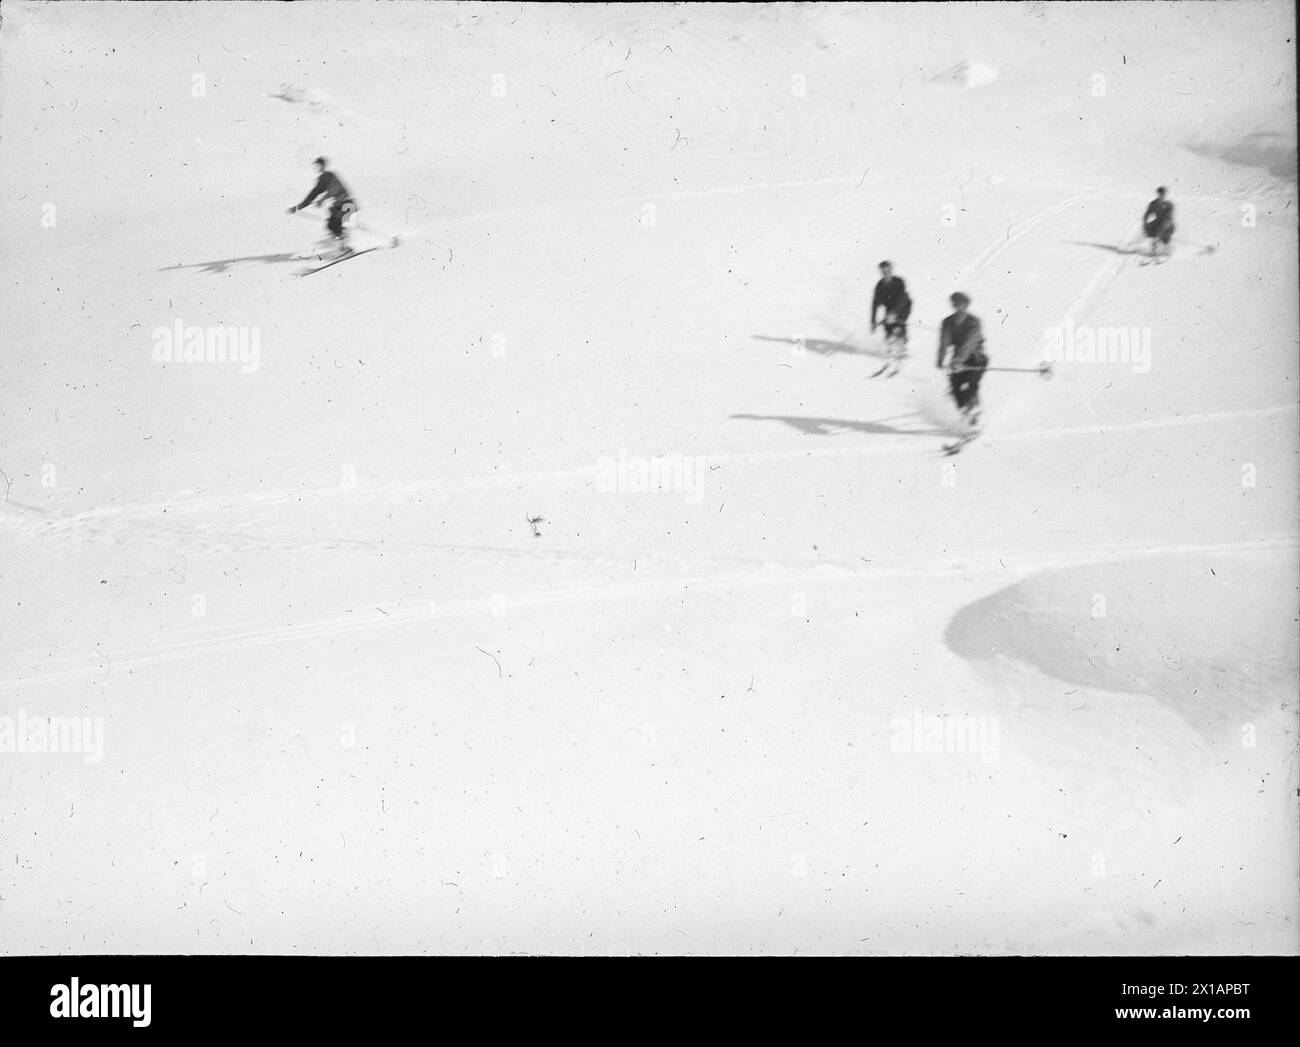 Skieur, skieur dans la région de Nassfeld. photographie. Photographie circa 1930., 1930 - 19300101 PD8175 - Rechteinfo : droits gérés (RM) Banque D'Images